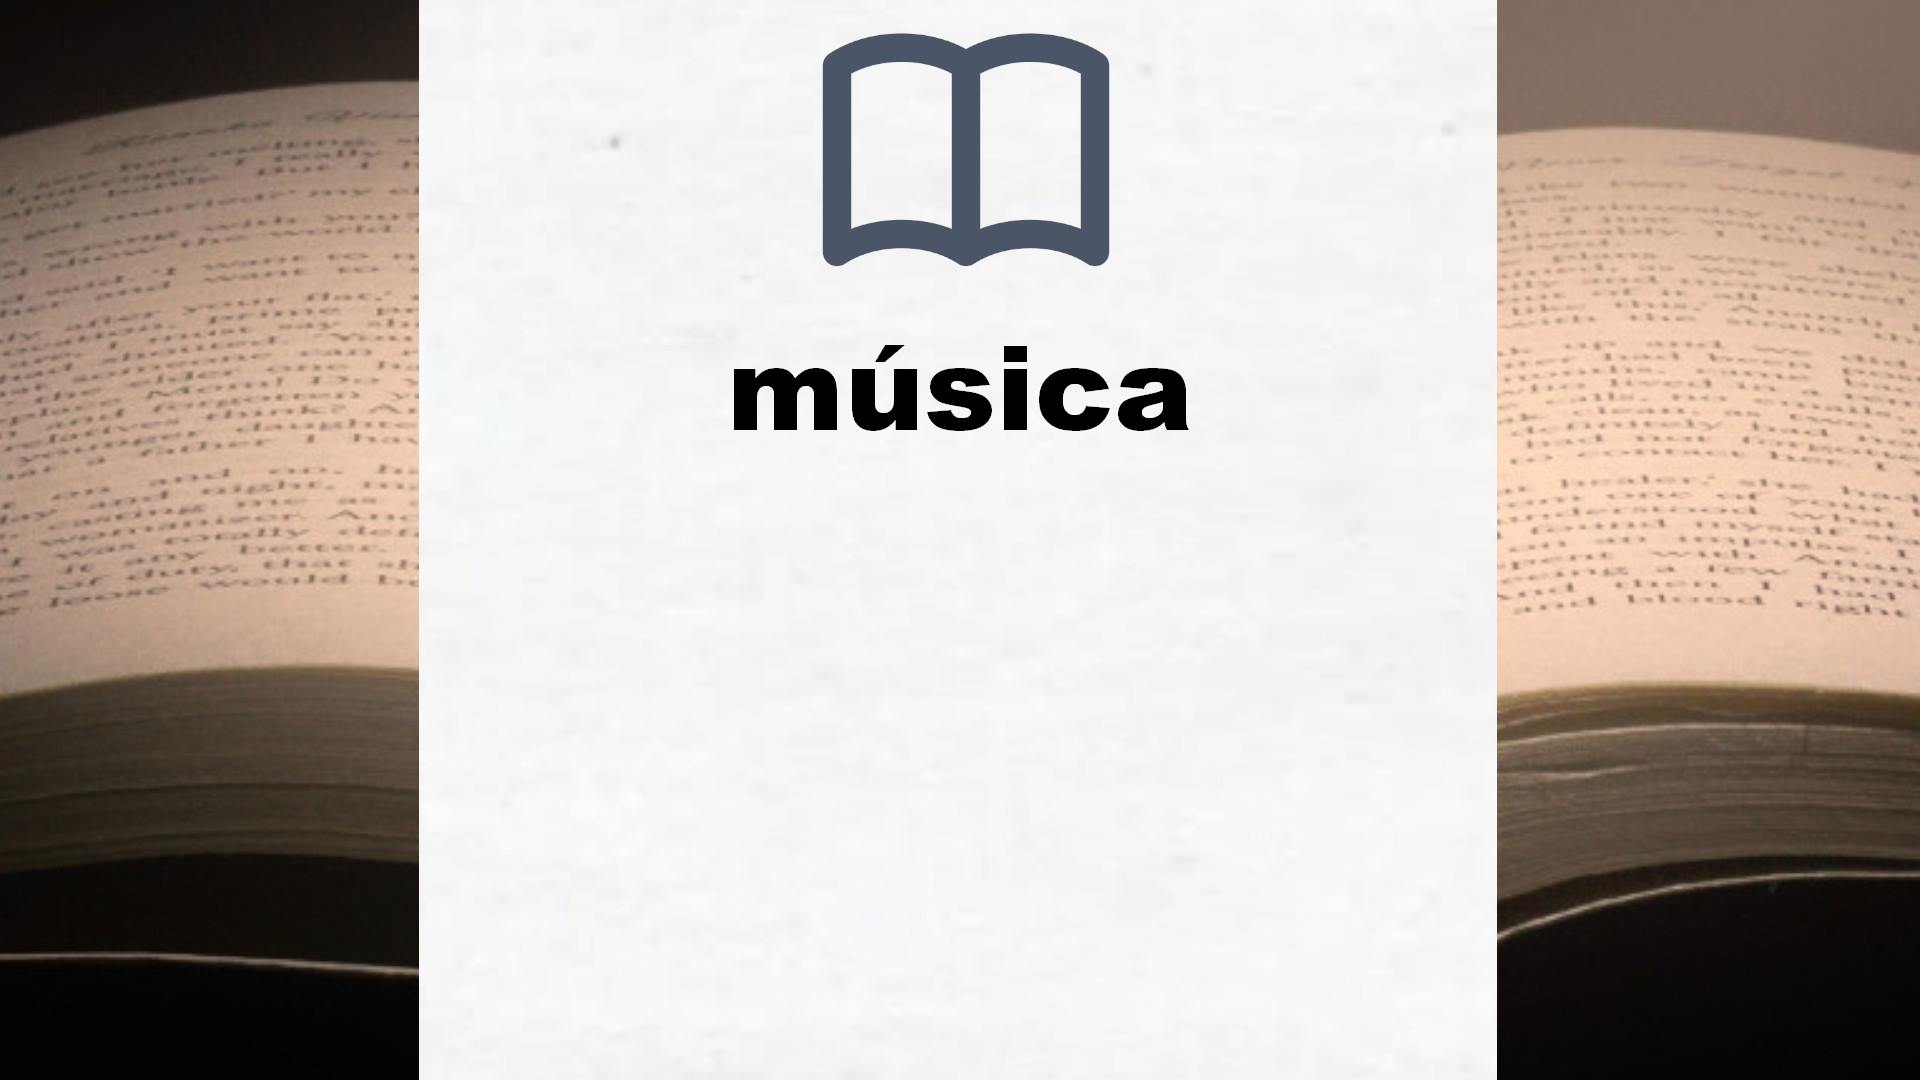 Libros sobre música